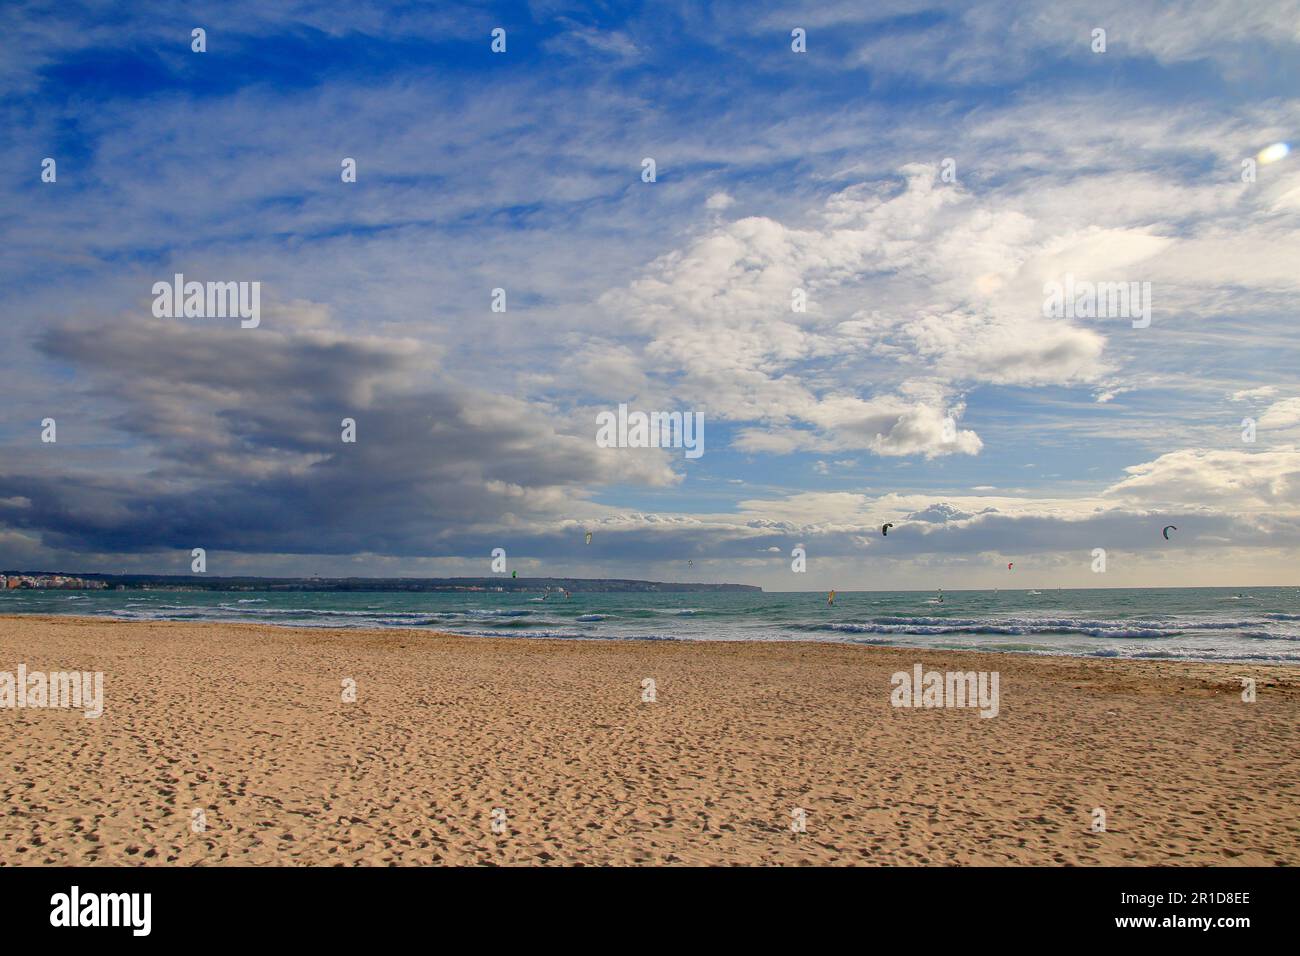 Nella foto si trova una spiaggia deserta sull'isola di Palma de Mallorca in un ventoso clima autunnale. Foto Stock